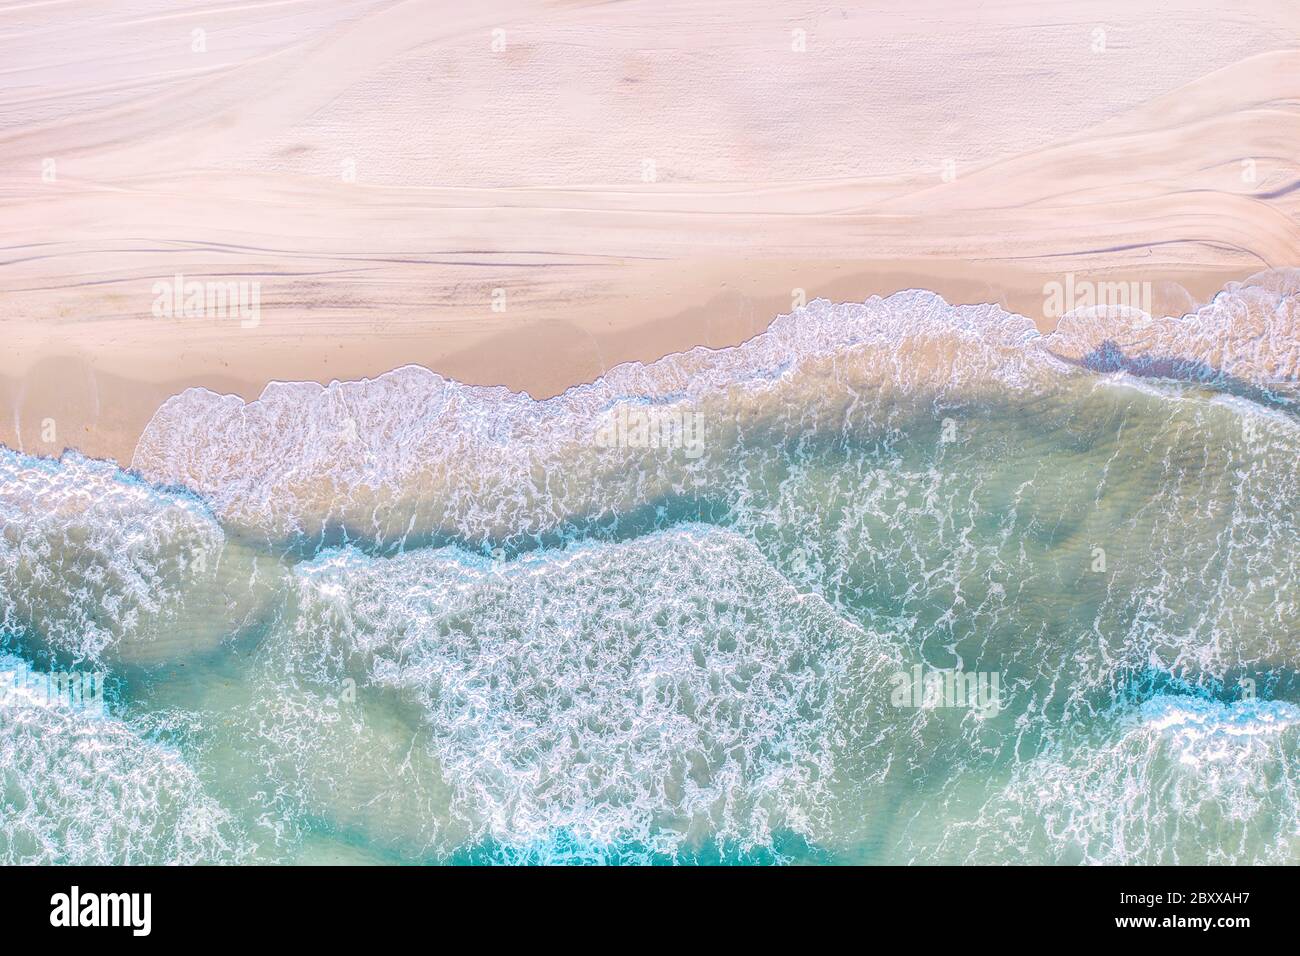 White sand beach in Miami Beach, Florida Stock Photo